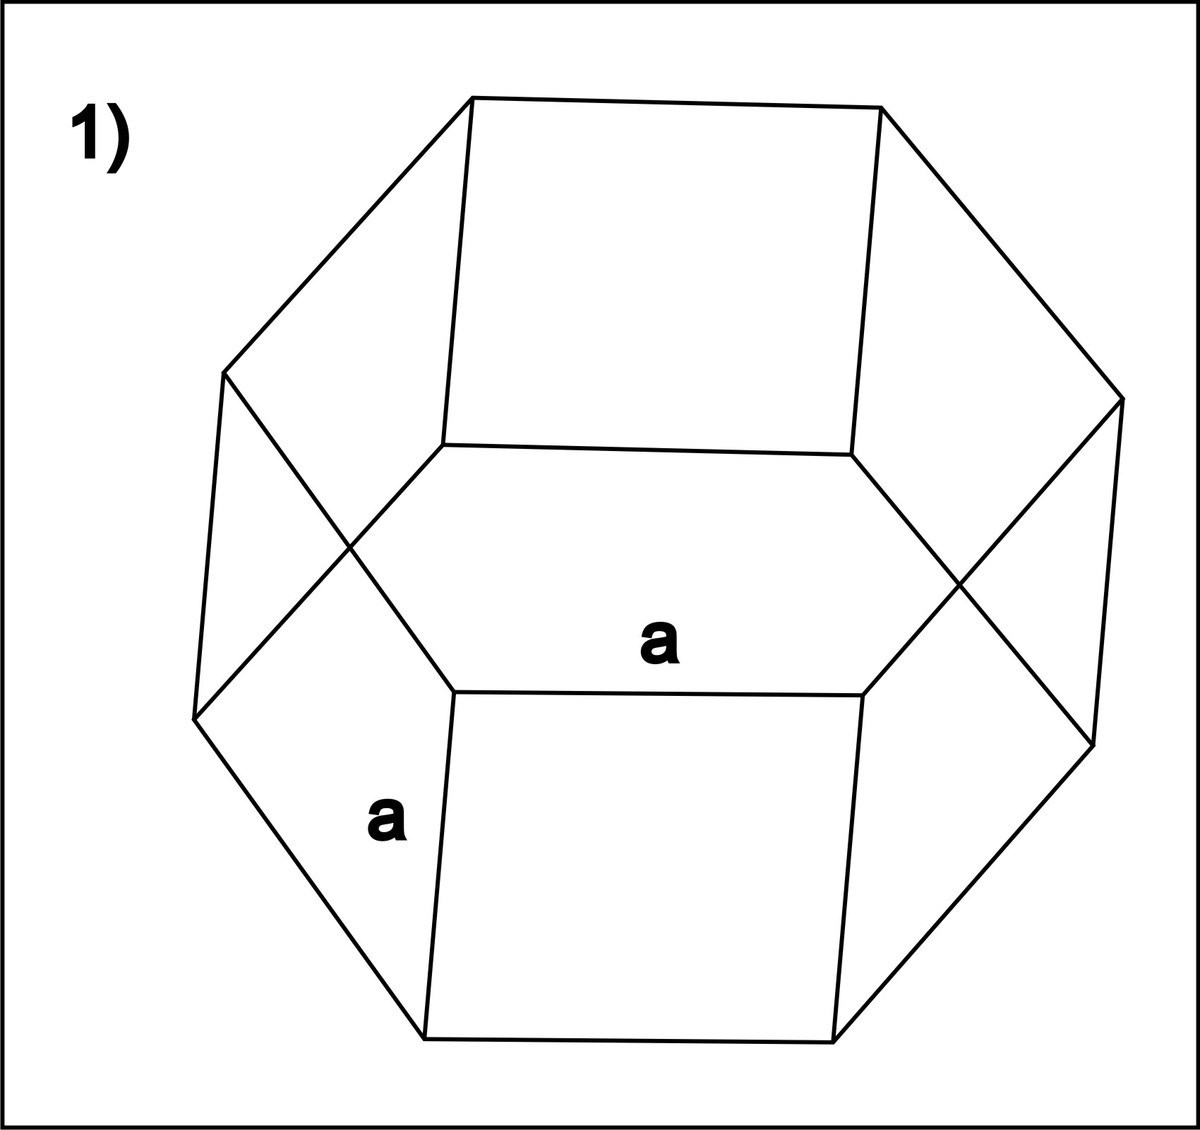 6 ти угольный. 6 Угольная Призма. Семиугольная Призма грани. Правильная семиугольная Призма. Правильная семиугольная Призма рисунок.